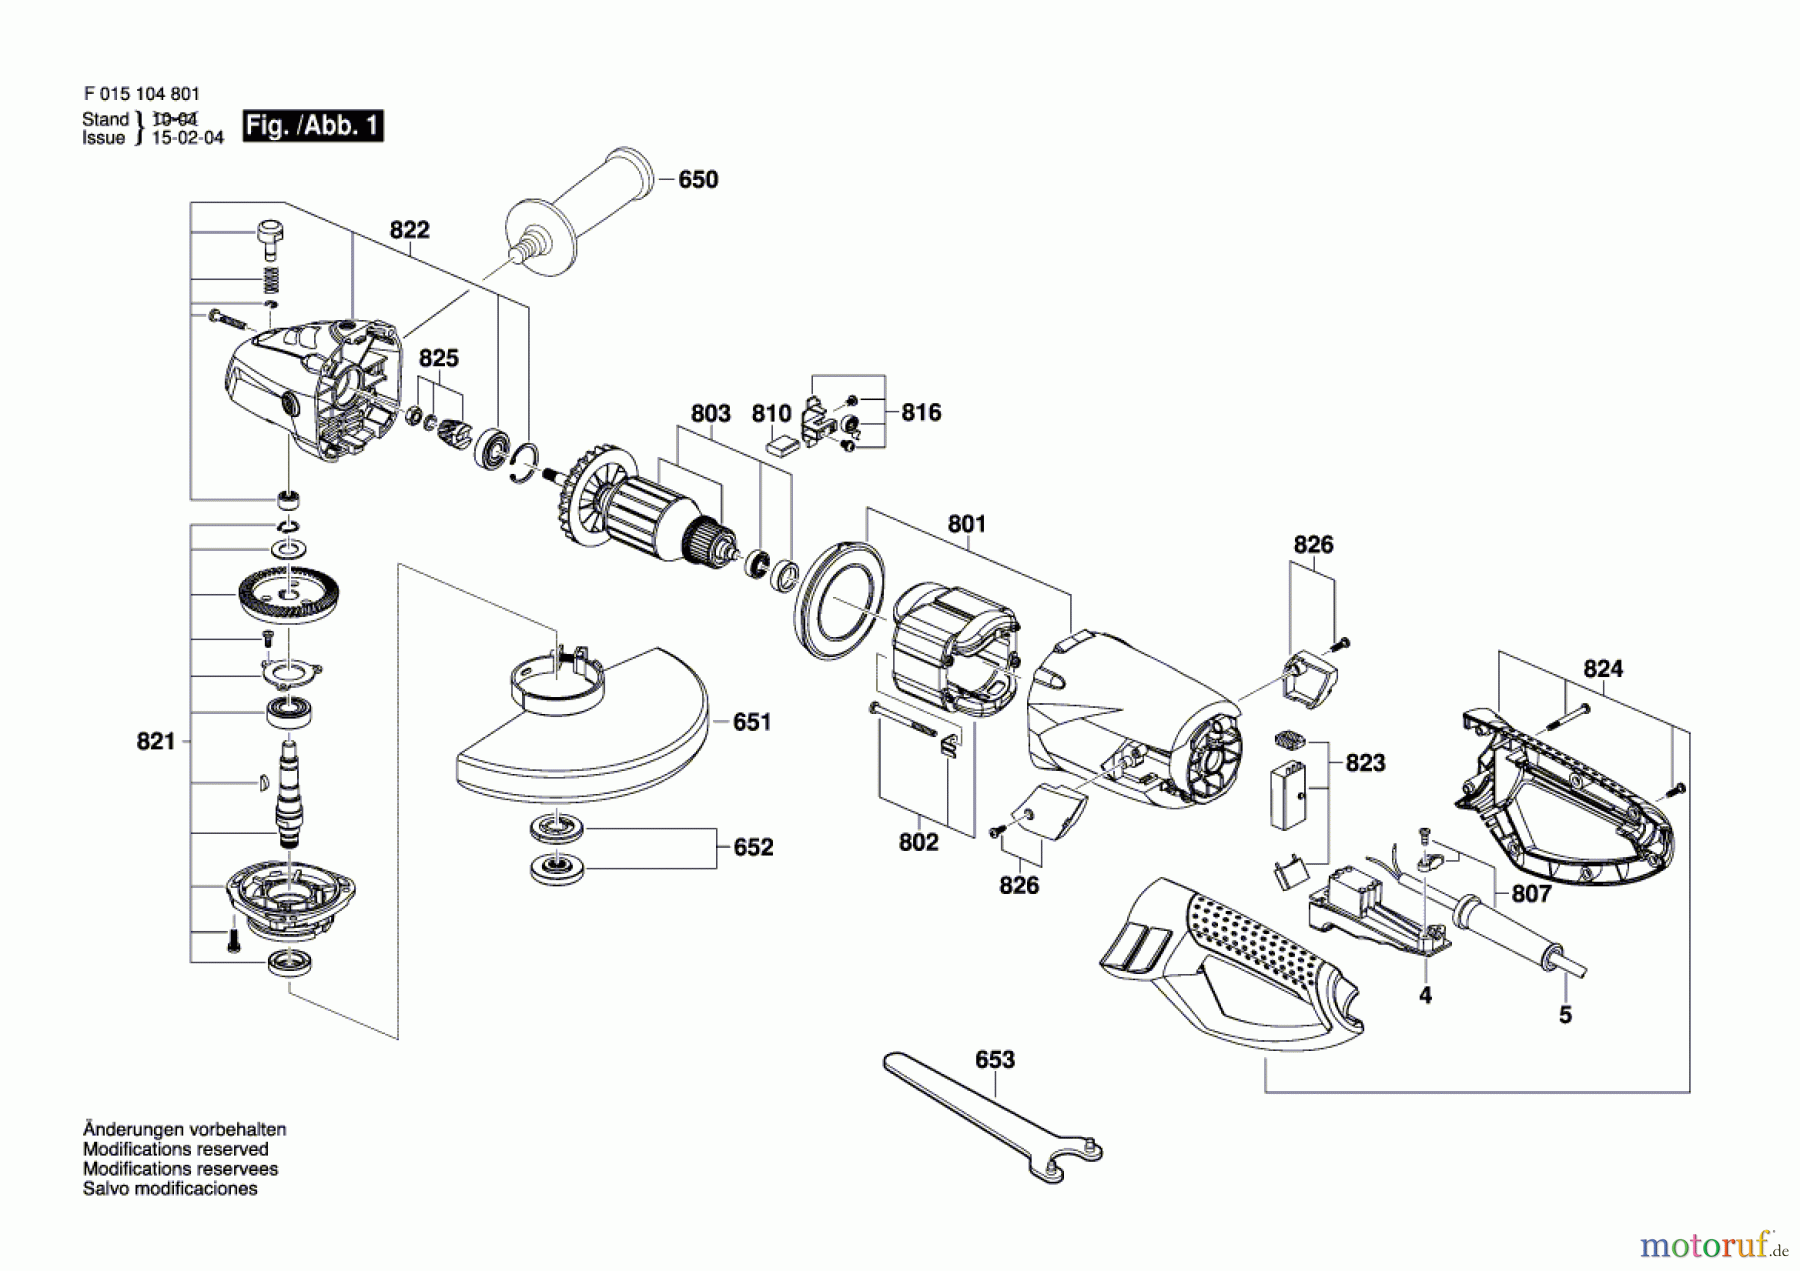  Bosch Werkzeug Winkelschleifer 1050 Seite 1